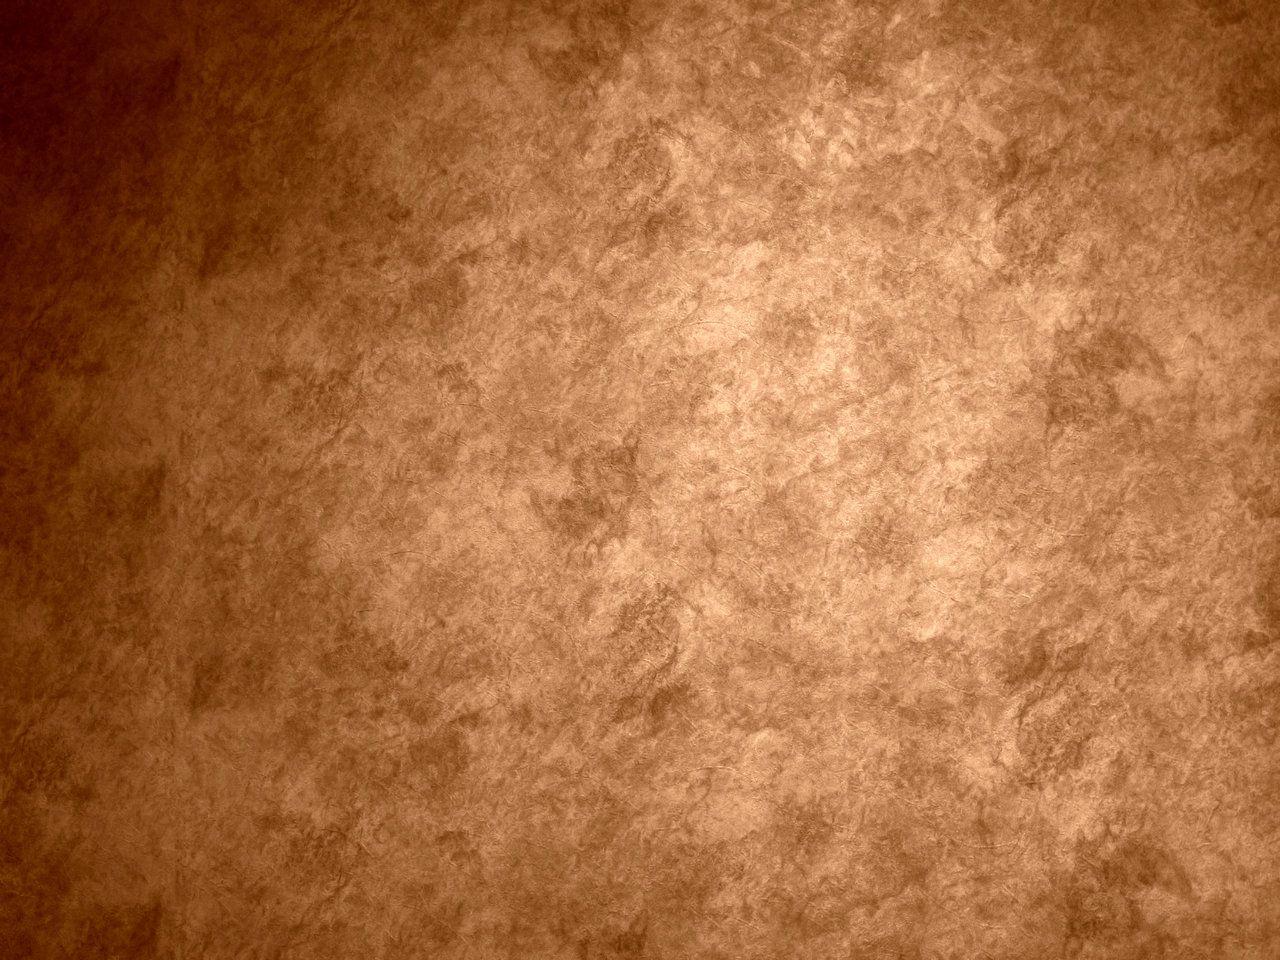 45 Wallpaper That Looks Like Copper  WallpaperSafari